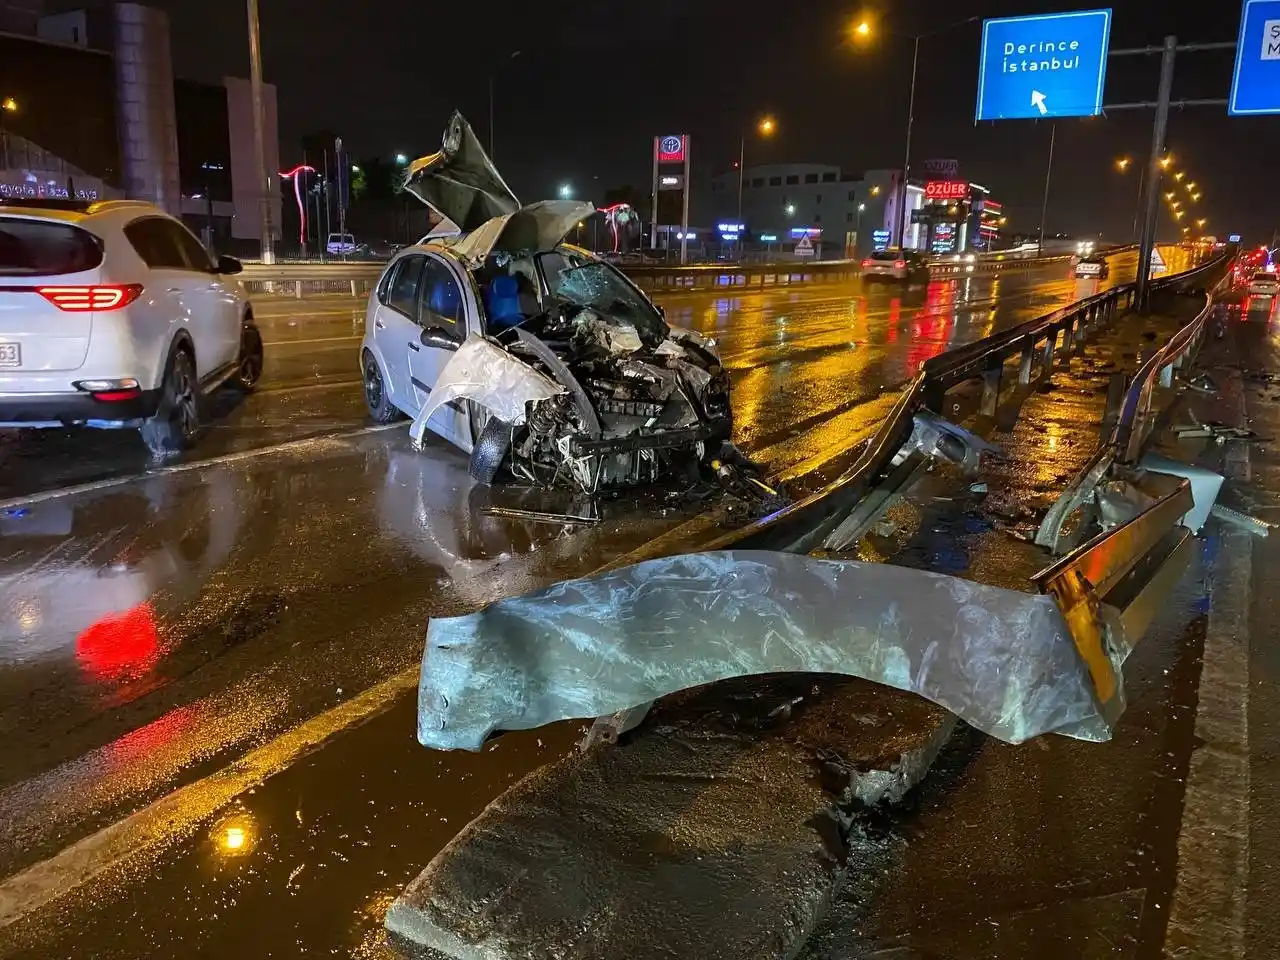 Kocaeli’de otomobil demir bariyerlere çarptı, vatandaş yaralıyı yağmurdan montuyla korudu
